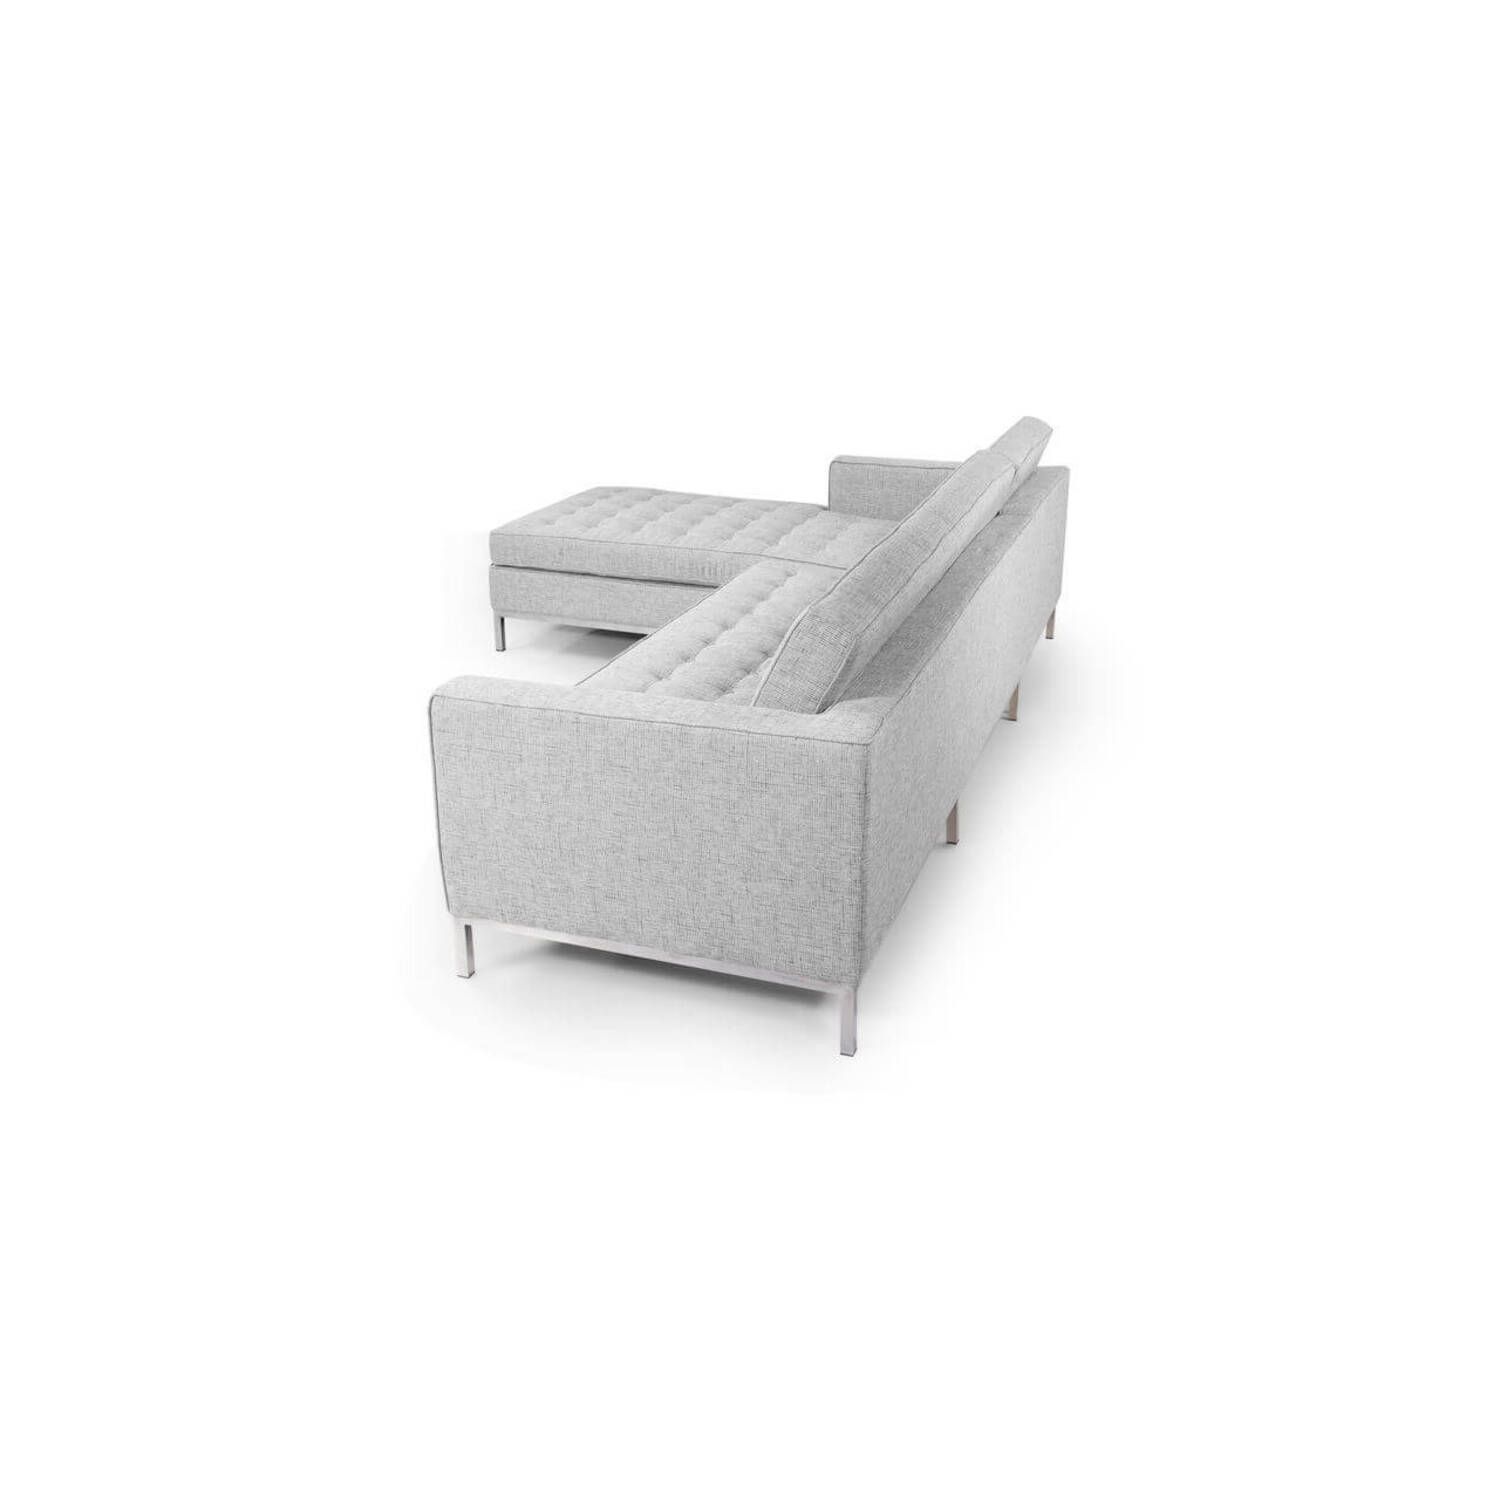 Светло-серый модульный диван Florence